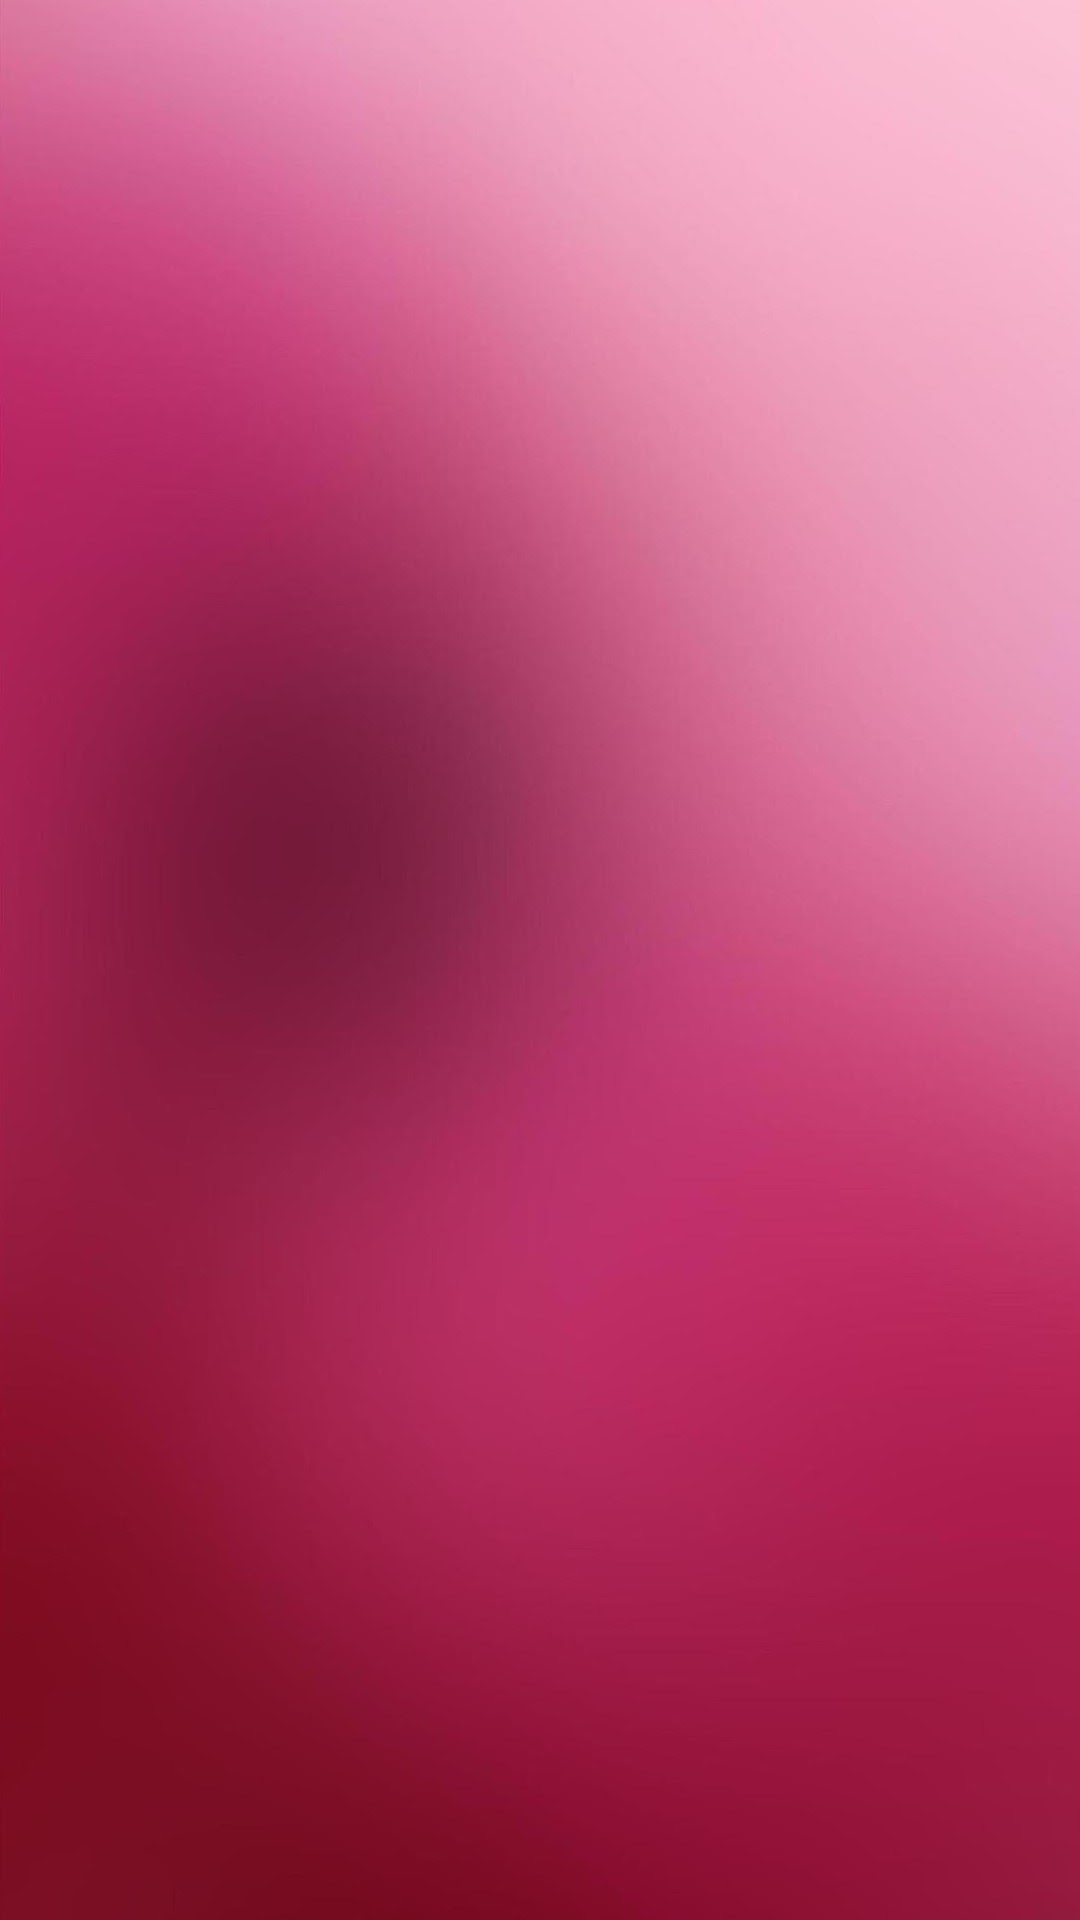 Hình nền điện thoại dễ thương màu hồng HD cho iPhone android Vforum.vn-133767-hinh-nen-dien-thoai-mau-hong09102014-18